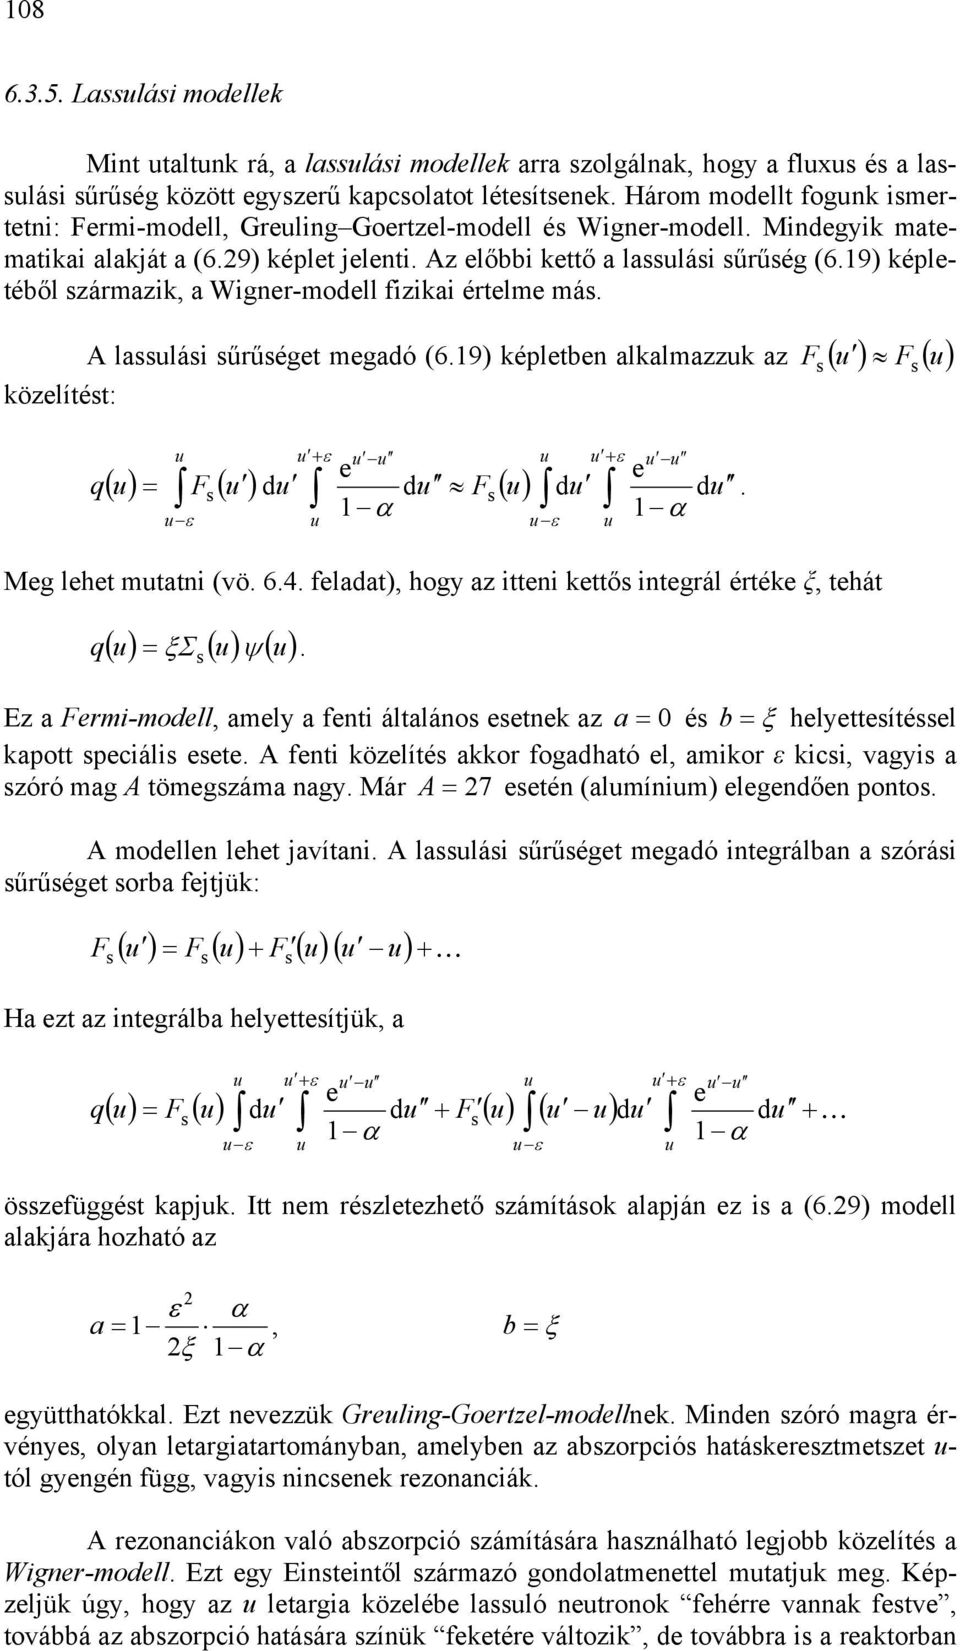 ( F ( q + ε + ε e e d α α ε ε ( = F ( d d F ( d Meg lehet mttni (vö 64 feldt, hogy z itteni kettő integrál értéke ξ, tehát q ( Σ ( ψ ( = ξ z Fermi-modell, mely fenti áltláno eetnek z = é b = ξ